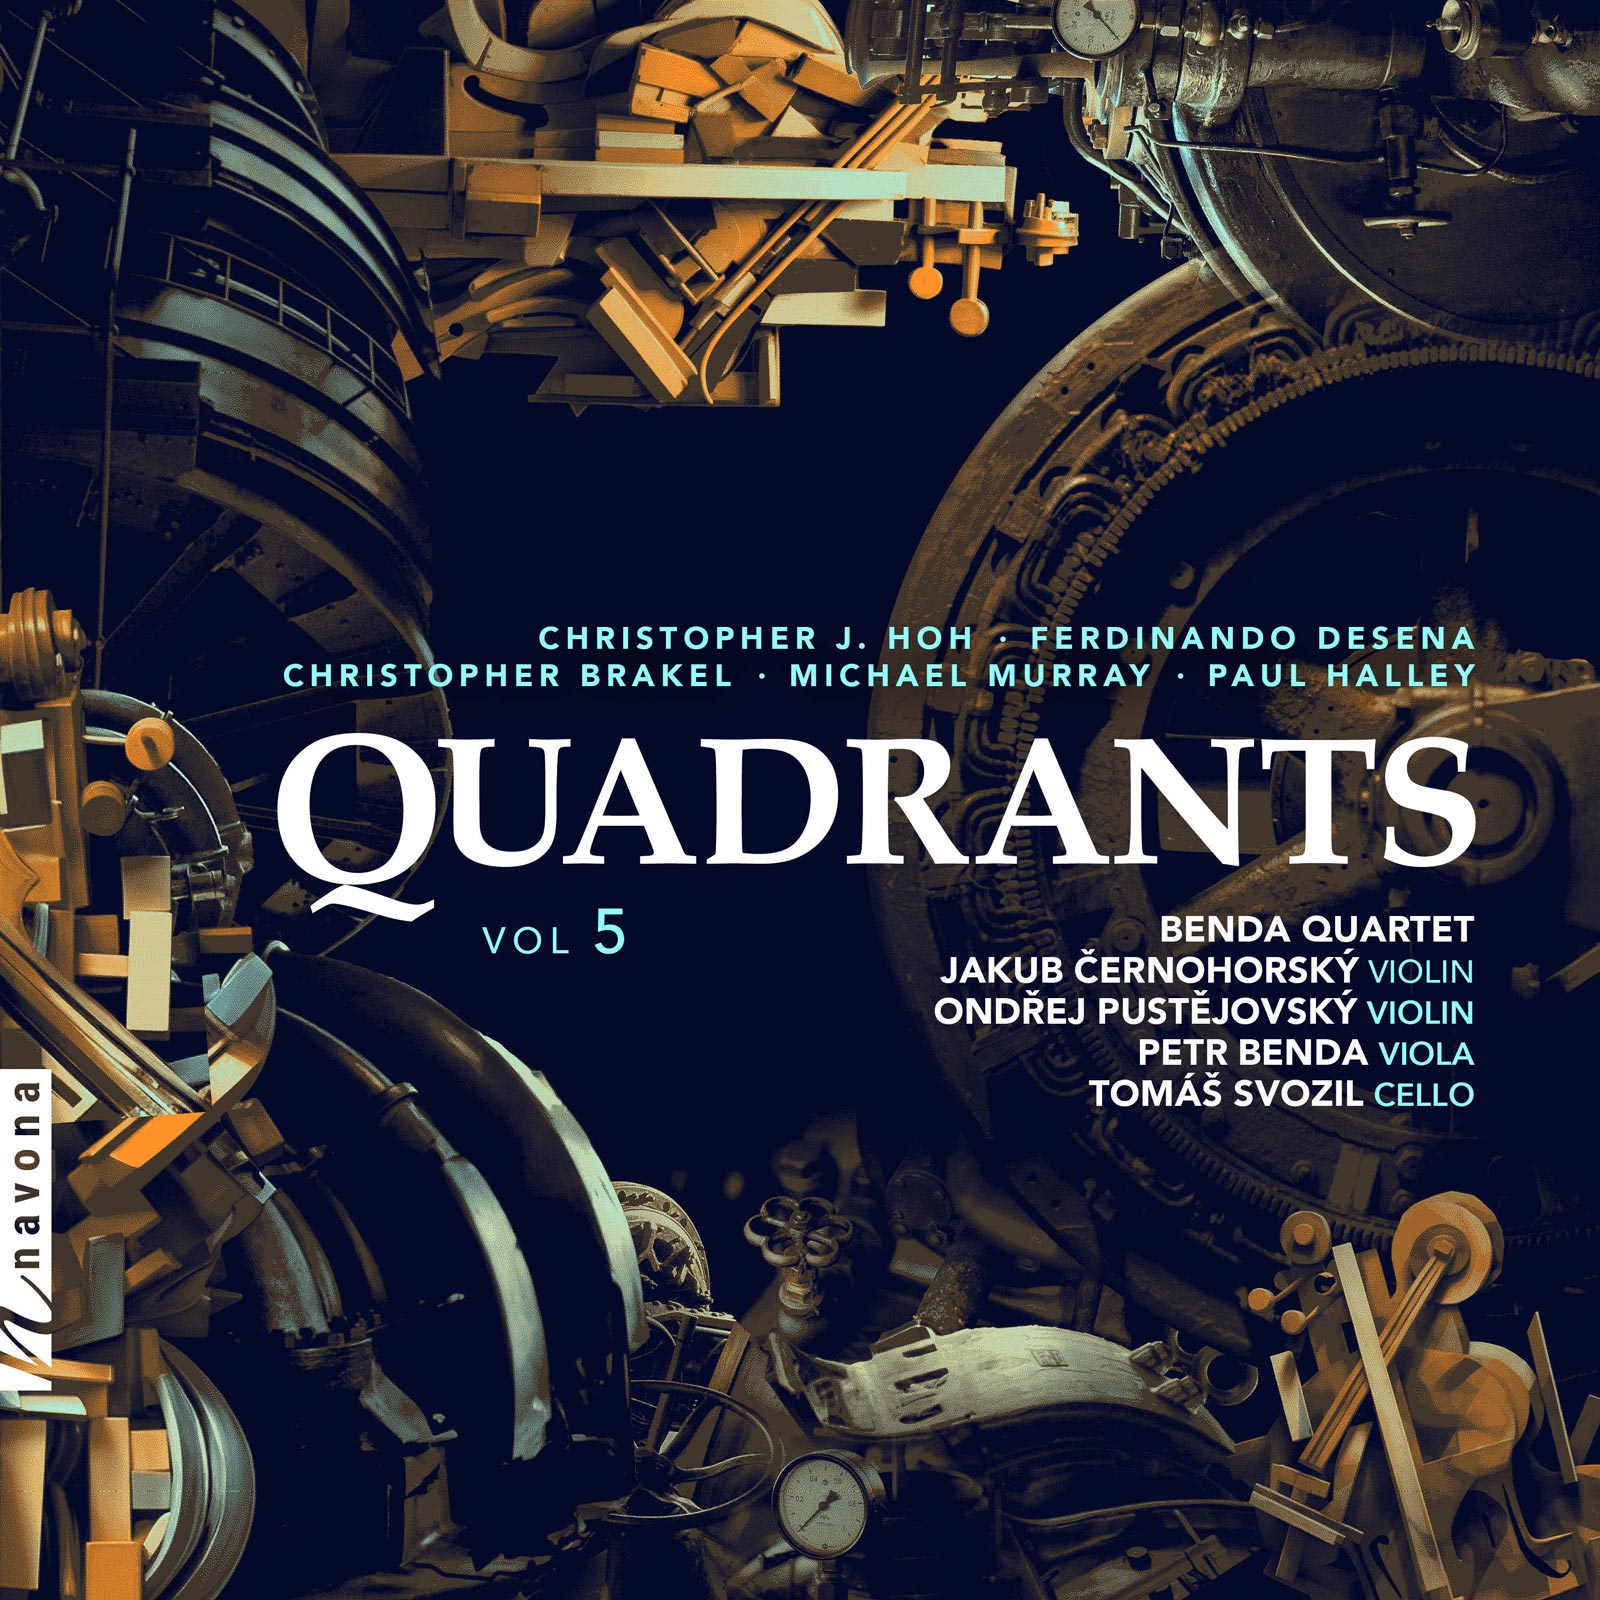 Quadrants Vol. 5